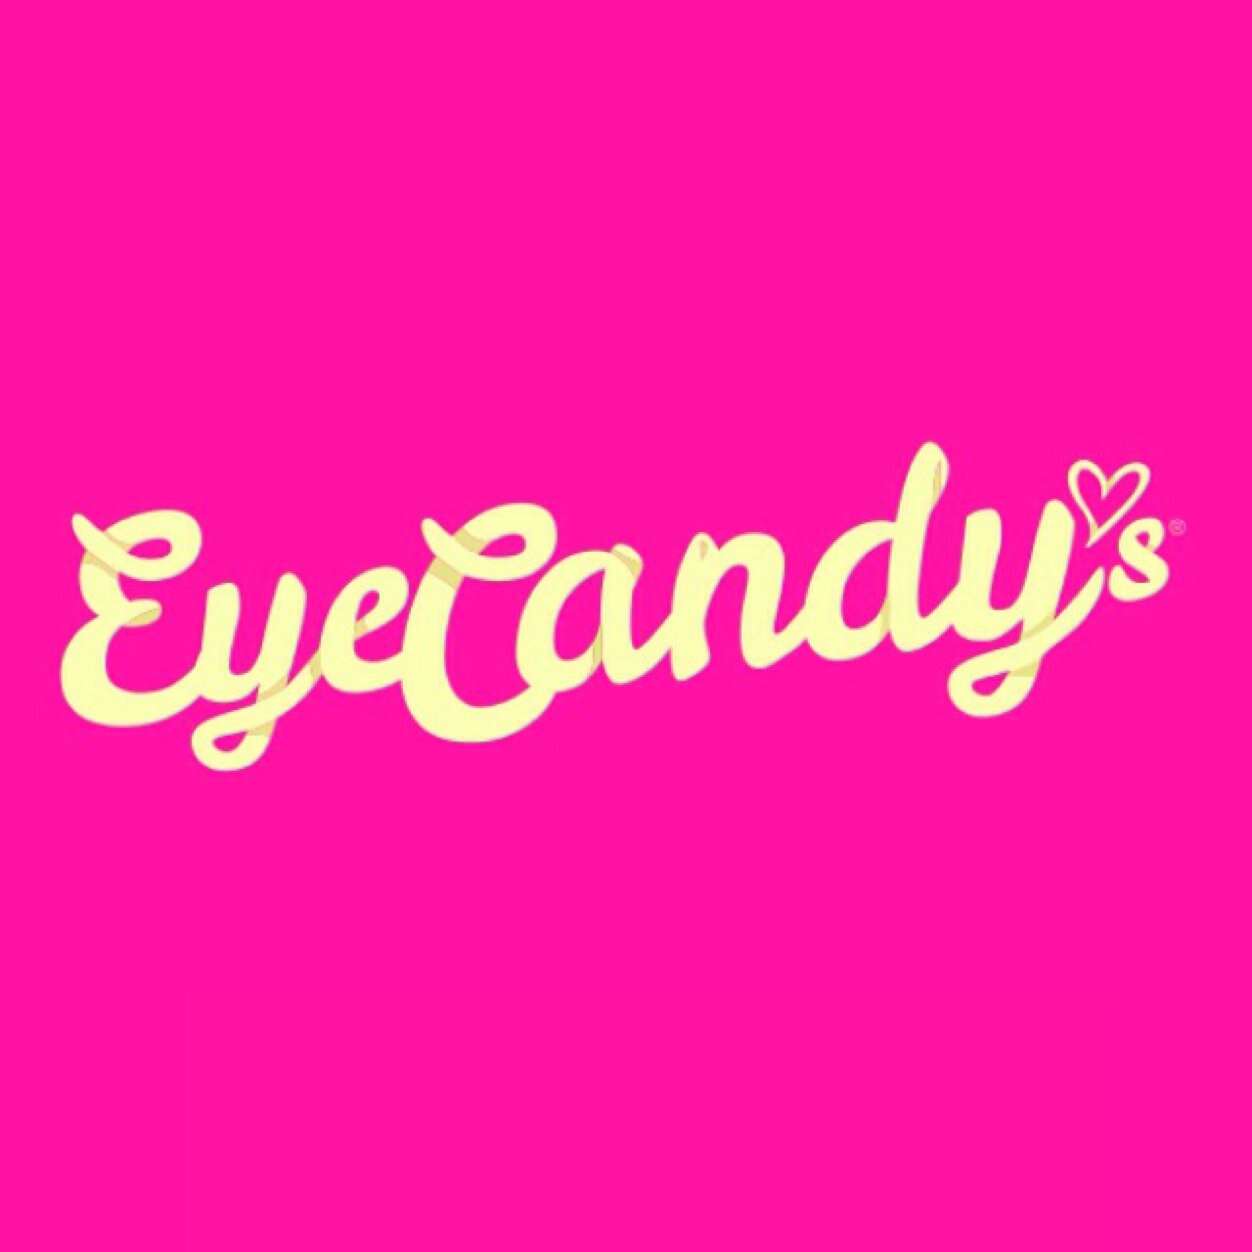 EyeCandy'sさんのプロフィール画像